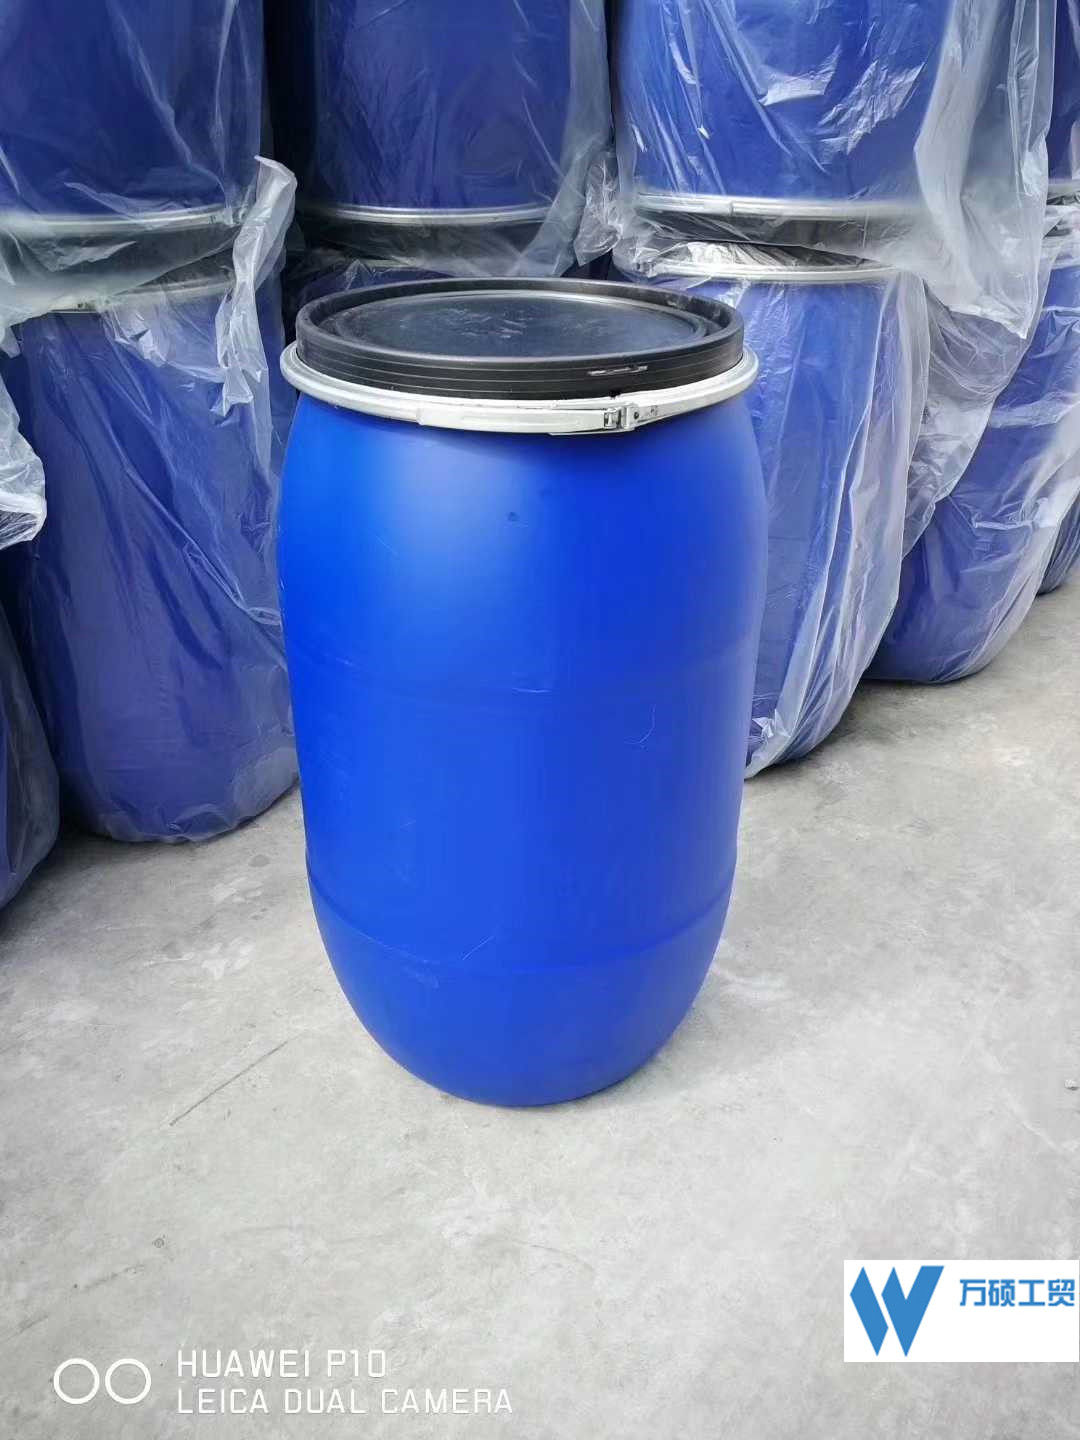 皮重8kg塑料桶|厂家批发|化工塑料桶供应